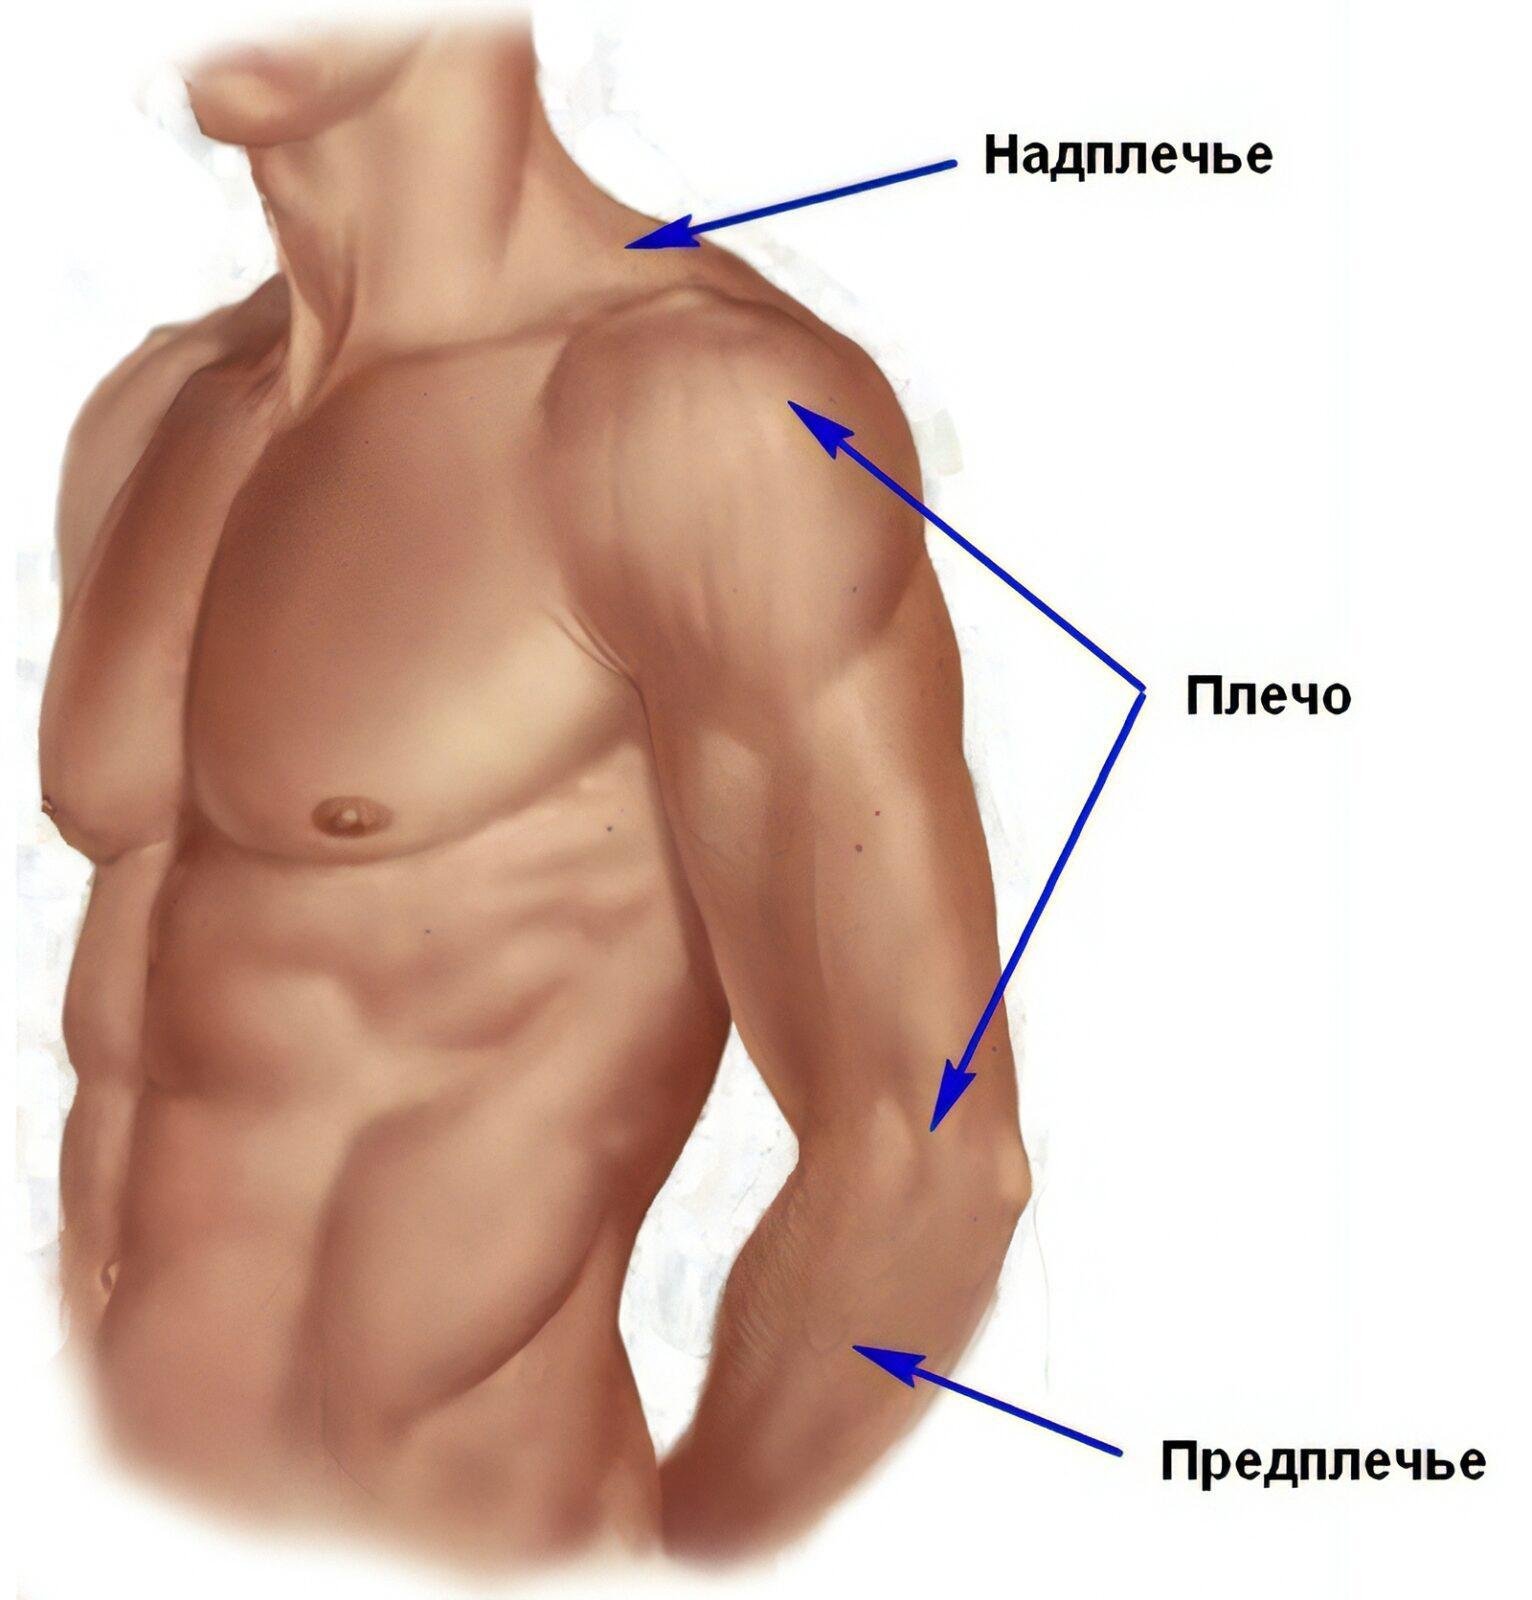 Плече це. Где плечо у человека и предплечье. Анатомия плечо и предплечье. Название частей руки. Части руки человека названия.